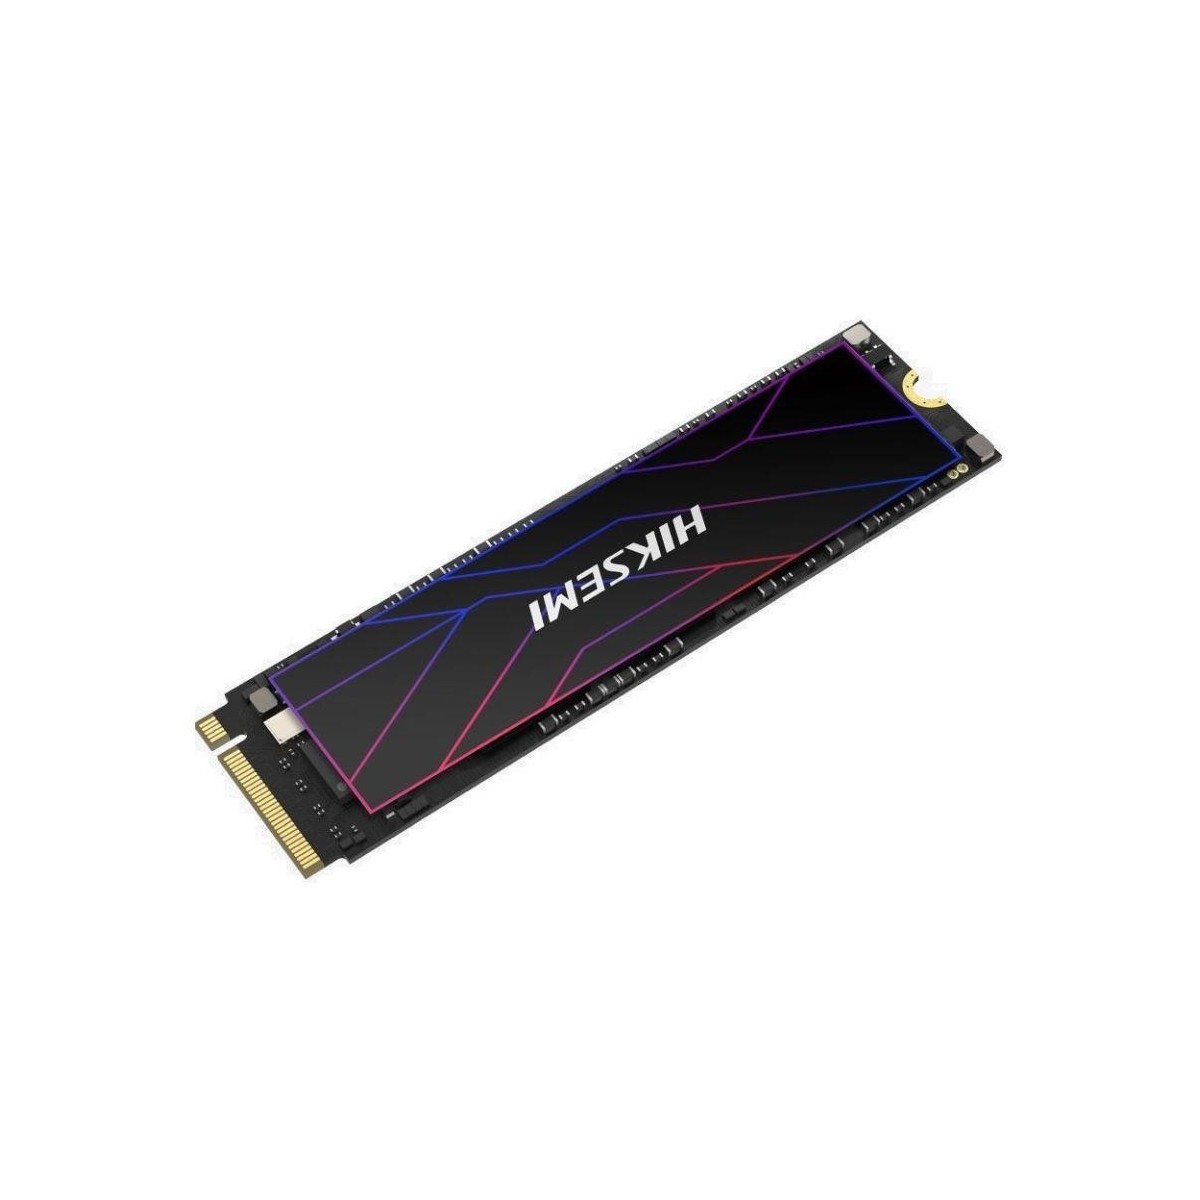 HIKSEMI SSD FUTURE 2048GB, M.2 2280, PCIe Gen4x4, R7450-W6750